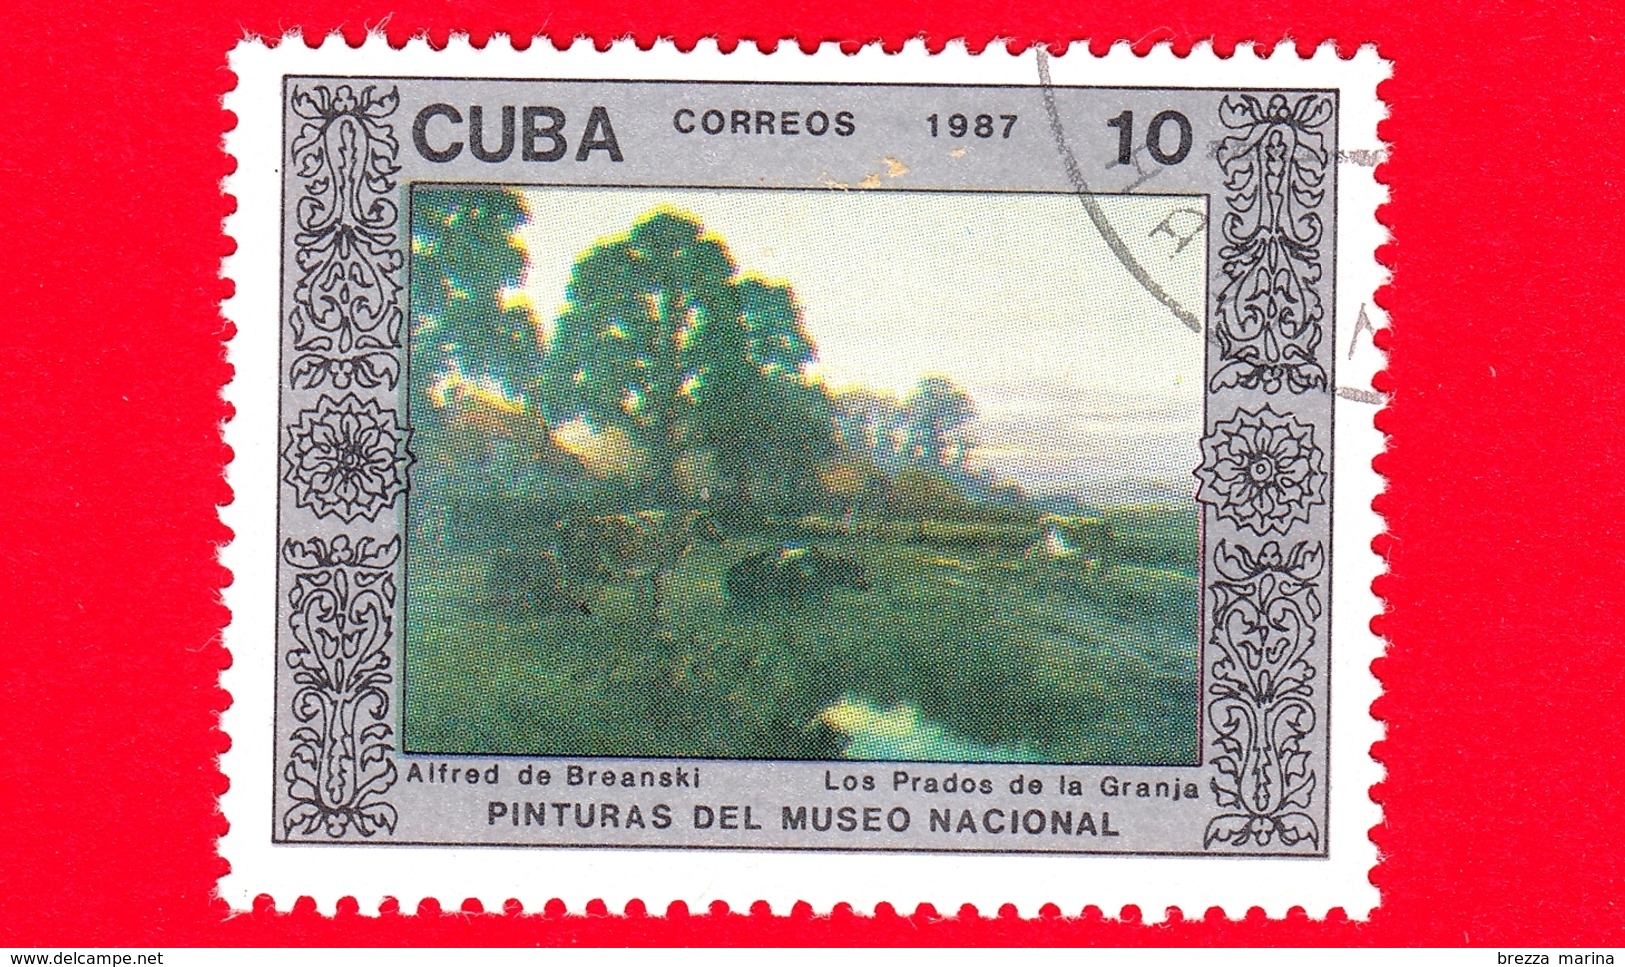 CUBA - 1987 - Azienda Agricola, Dipinto Di Alfred De Breanski Nel Museo Nazionale Di Belle Arti, L'Avana - 10 - Ungebraucht